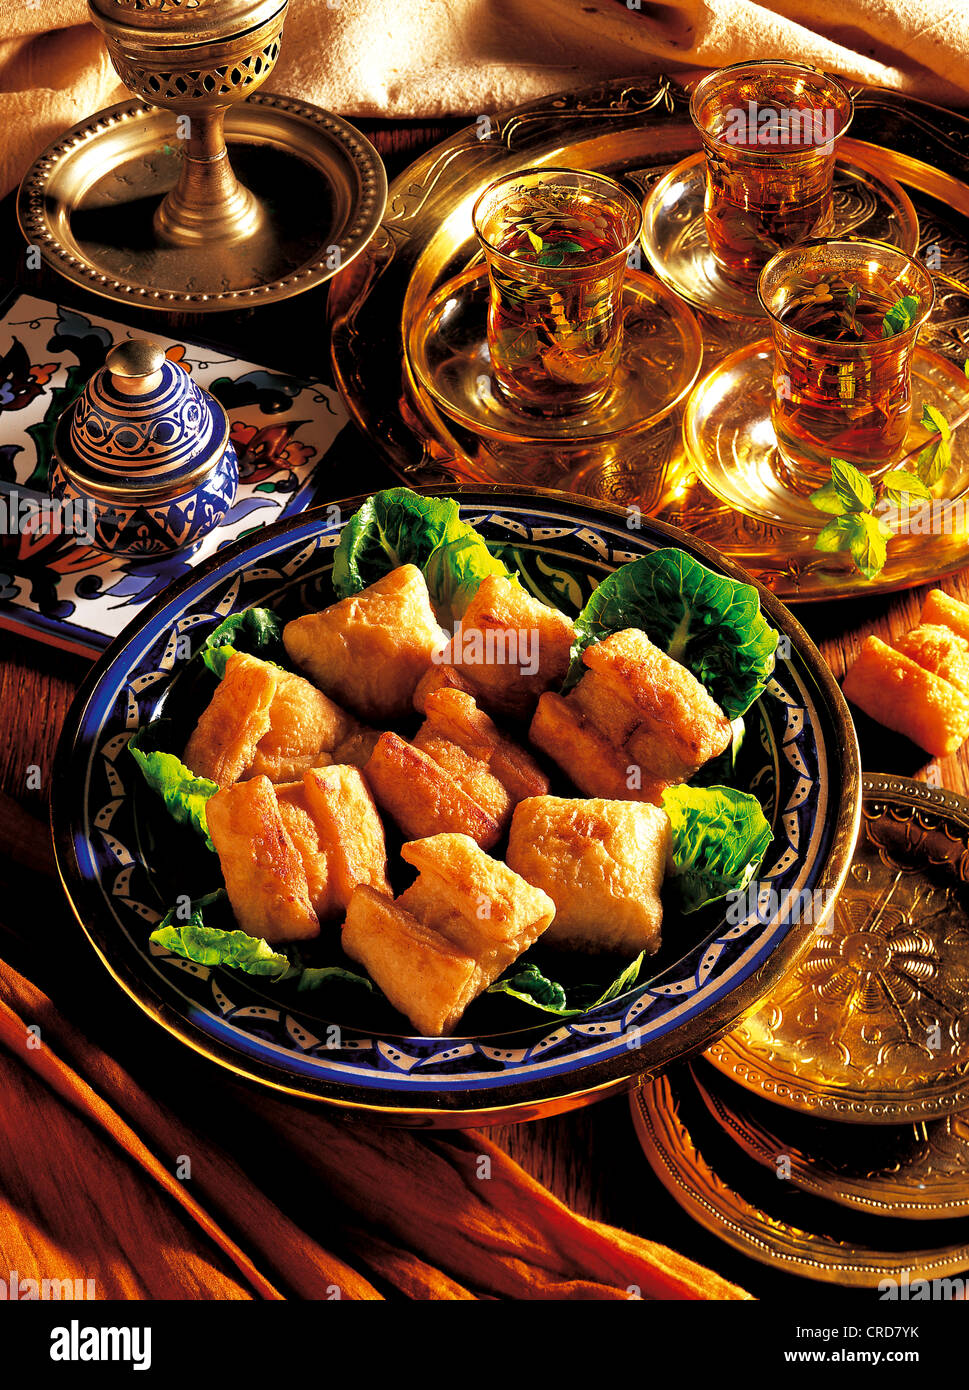 Paquetes de hojaldre al estilo de África del Norte, rellenos de queso de cabra aromático, Marruecos. Foto de stock